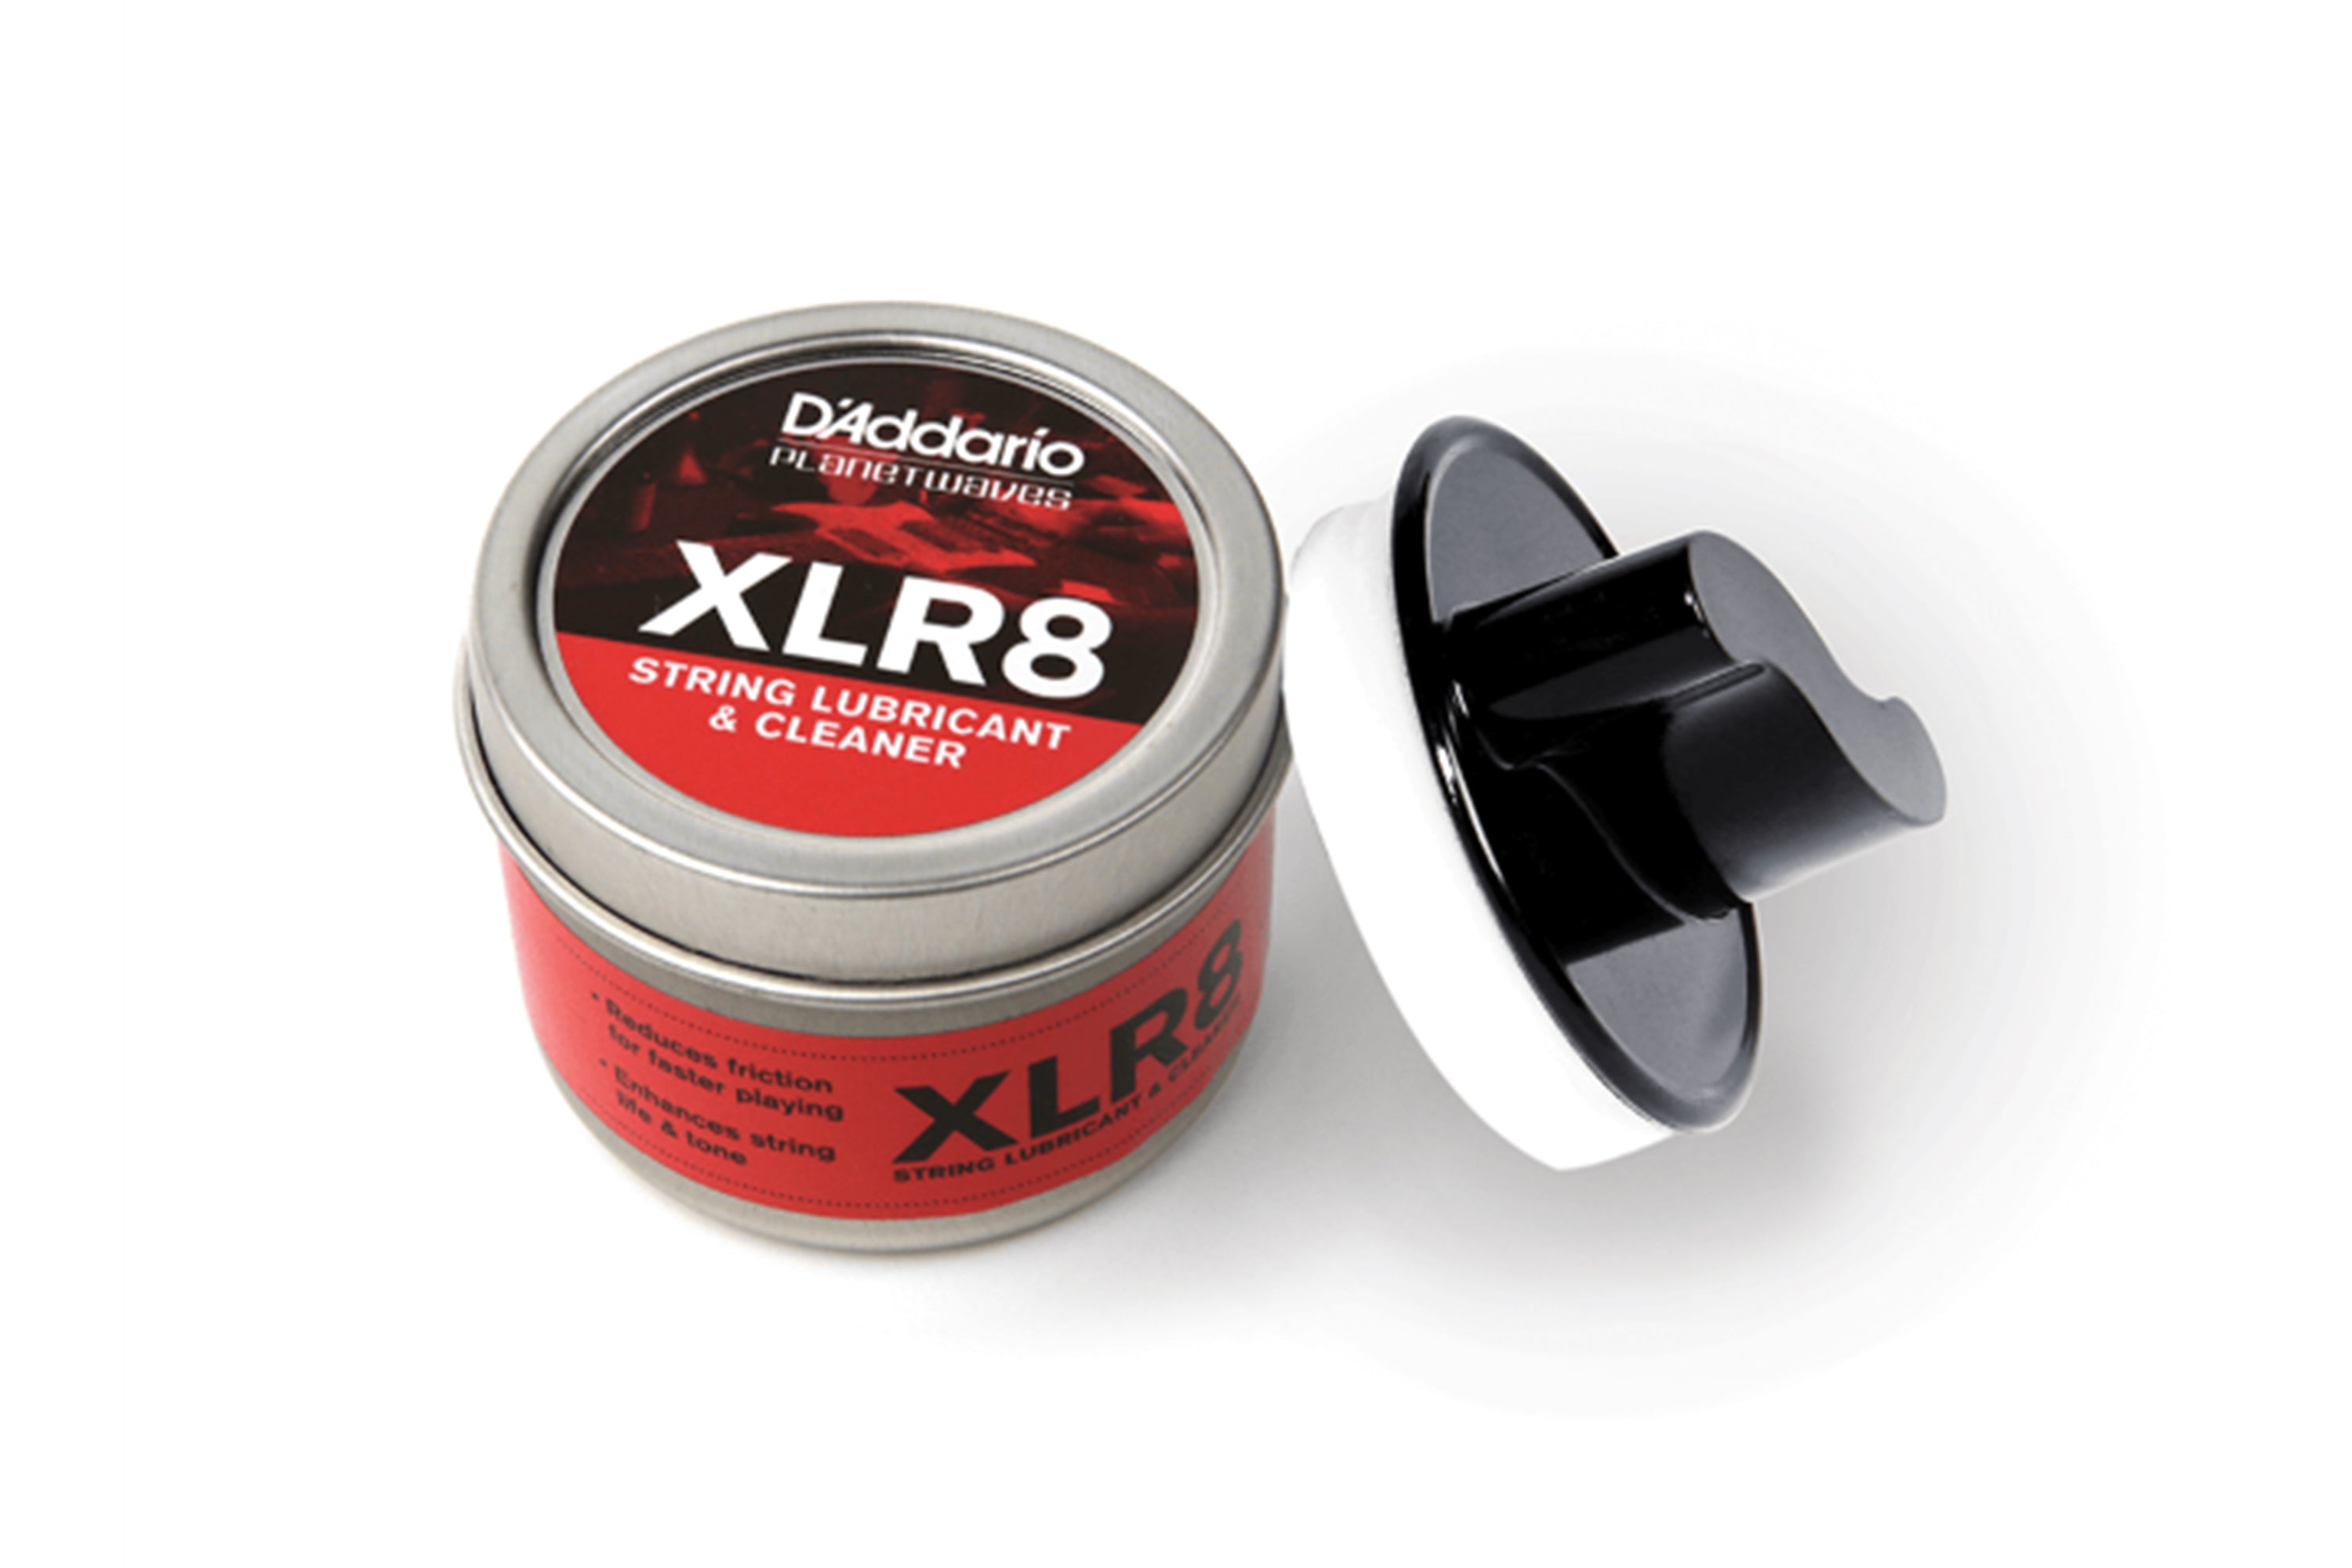 D'addario XLR8 String Lubricant & Cleaner